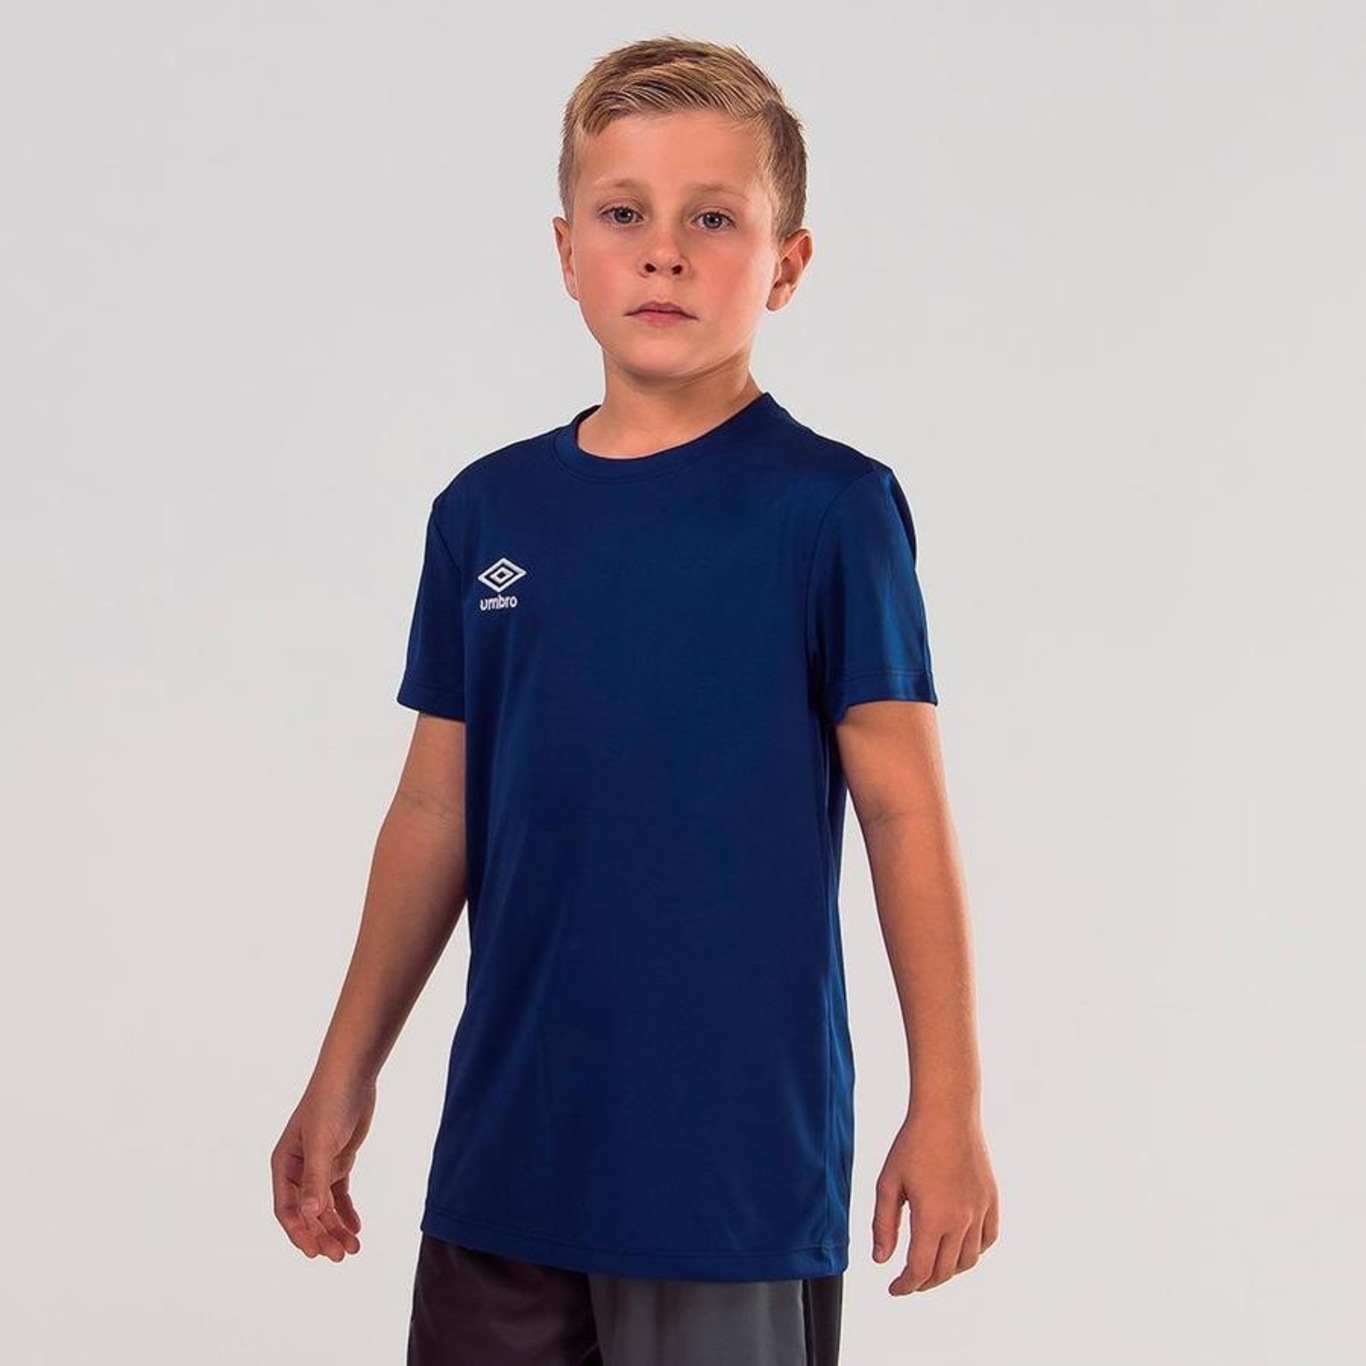 Camiseta Umbro Twr Striker - Infantil - Foto 2